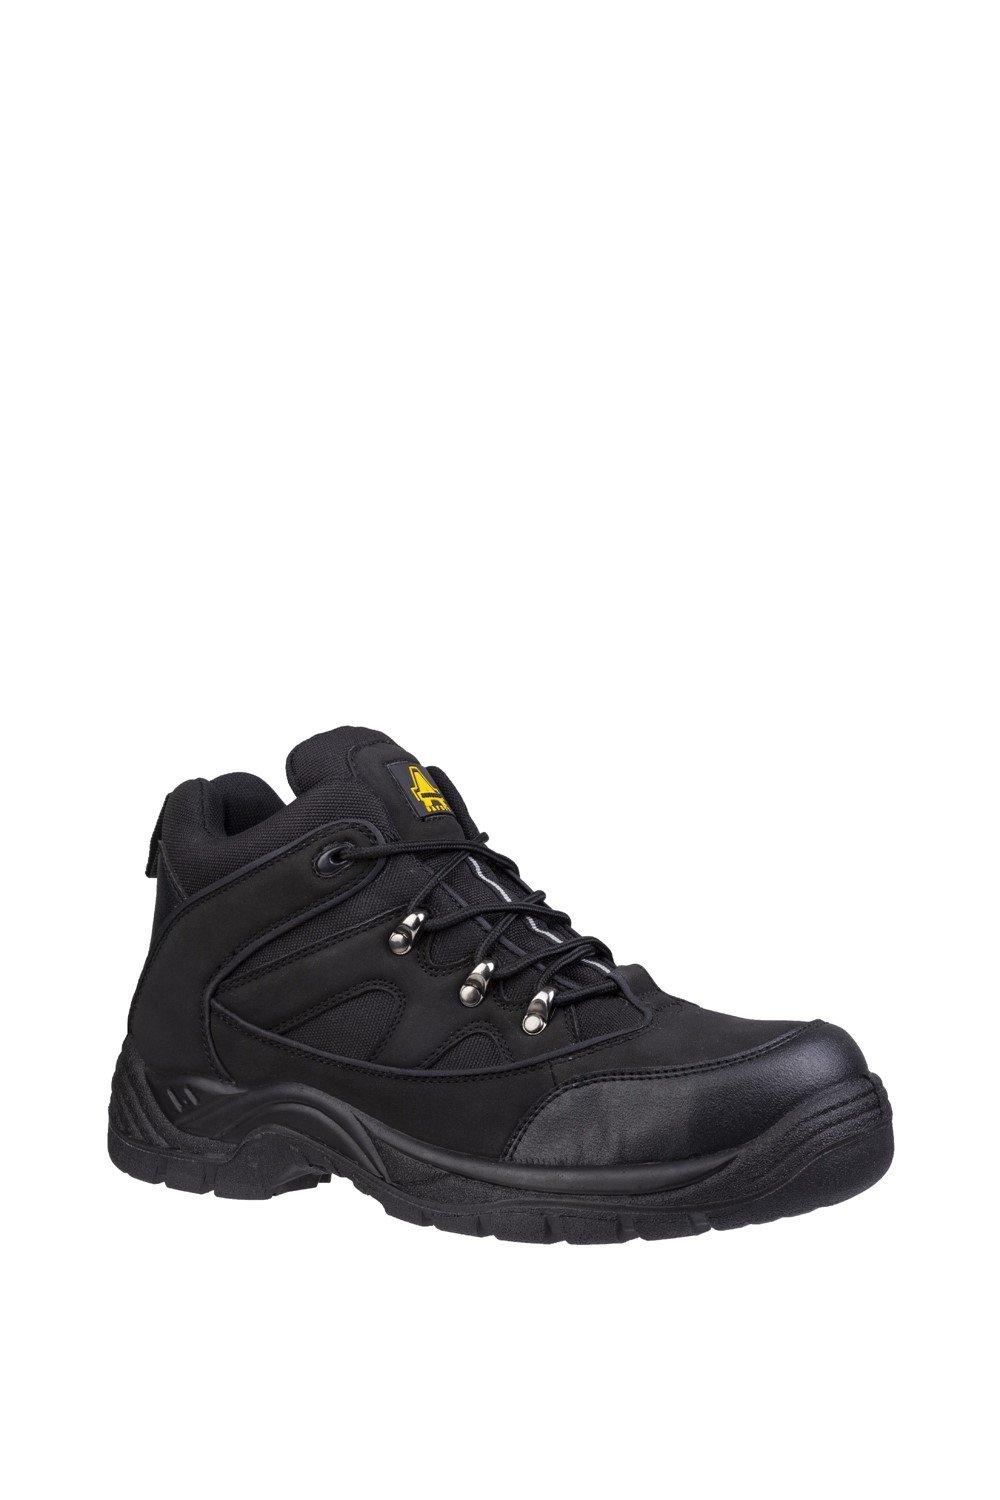 Защитные ботинки 'FS151' Amblers Safety, черный мужские нескользящие кроссовки легкие дышащие защитные рабочие ботинки со стальным носком сетчатые защитные ботинки новинка 2022